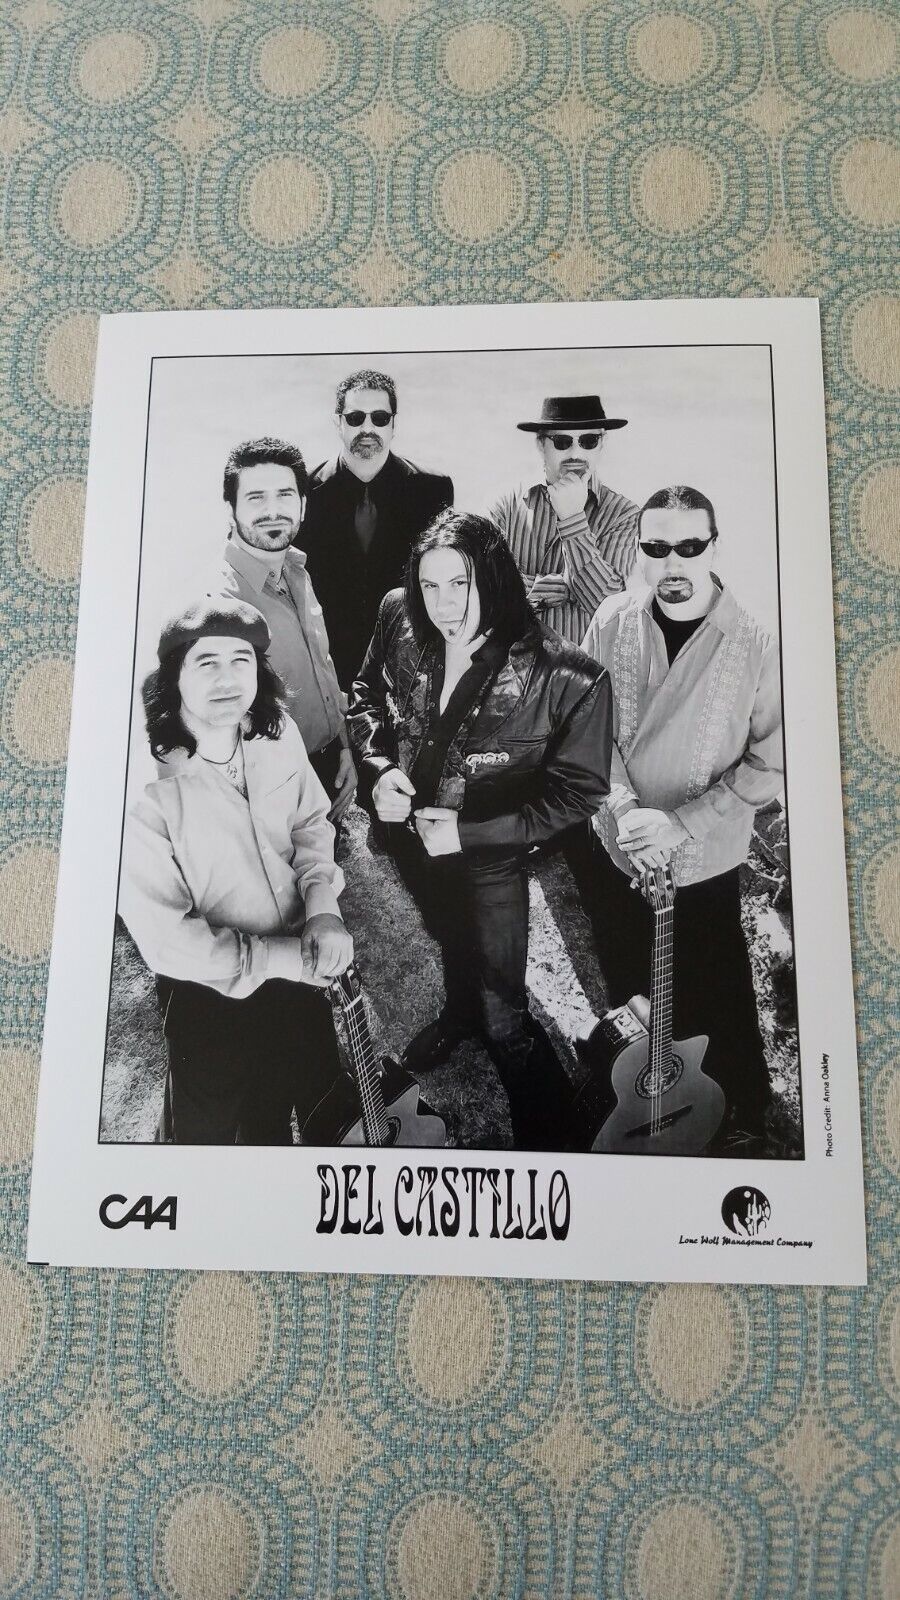 RC319 Band 8x10 Press Photo PROMO MEDIA DEL CASTILLO, CAA, LONE WOLF MGMT